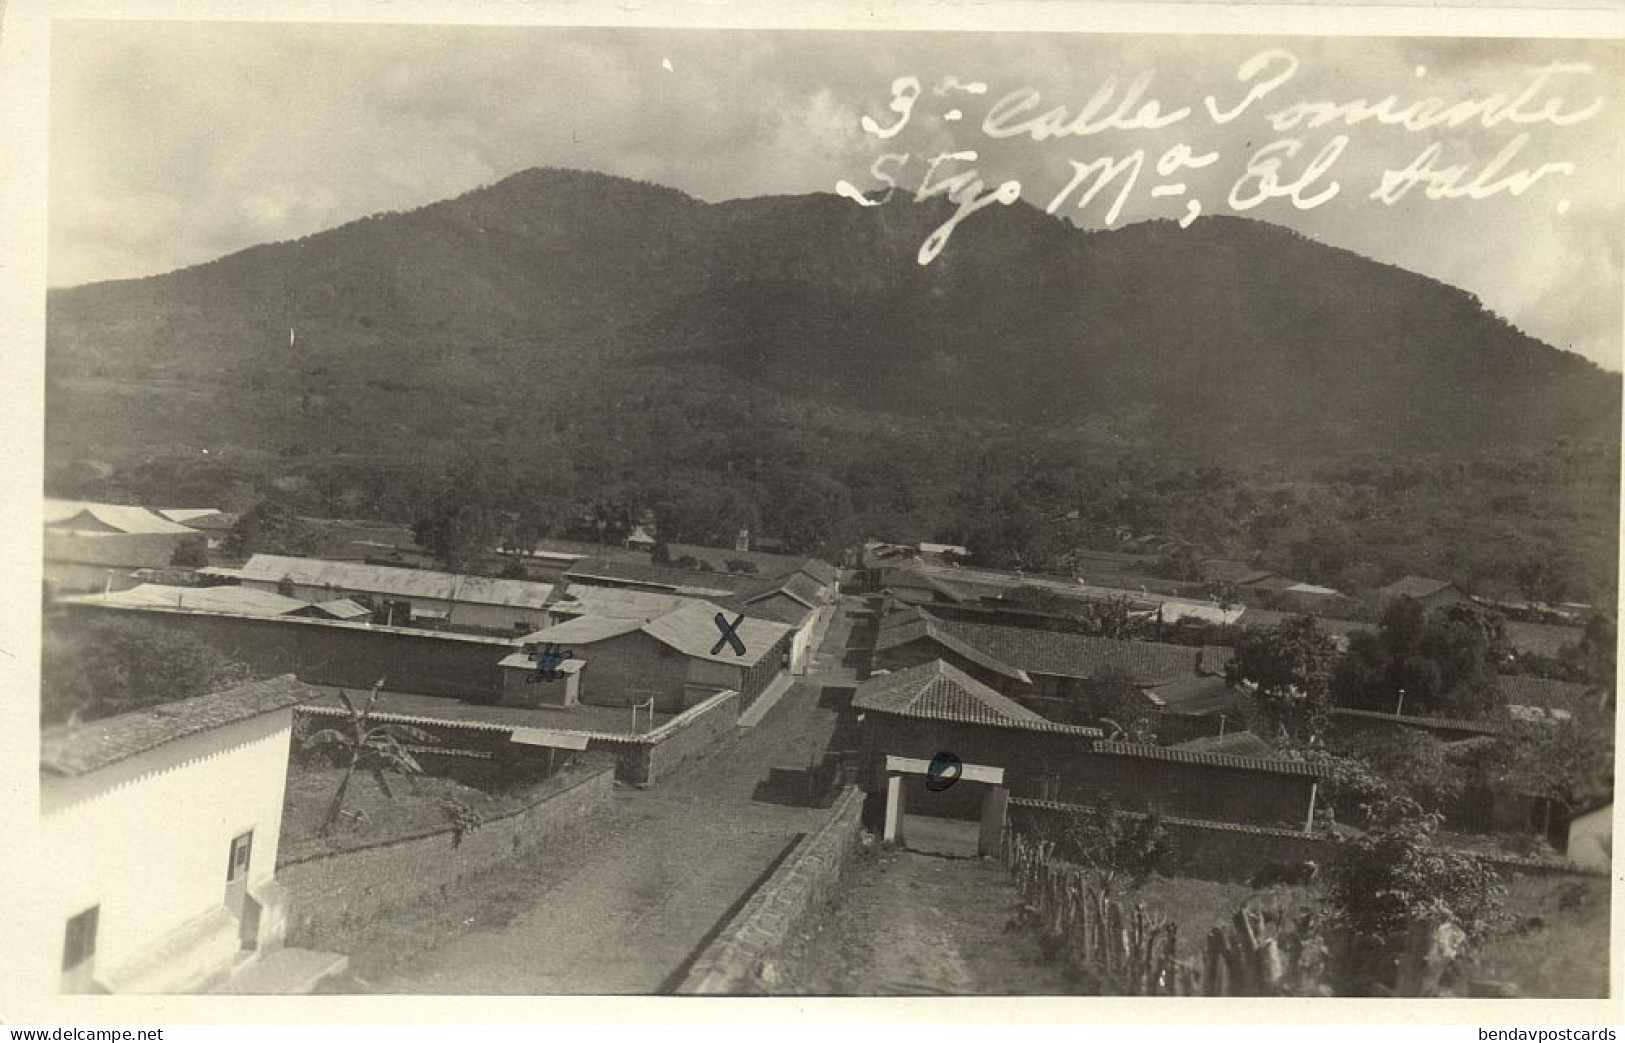 El Salvador, SANTIAGO DE MARIA, 3a Calle Poniente, El Tigre Volcano (1910s) RPPC - El Salvador